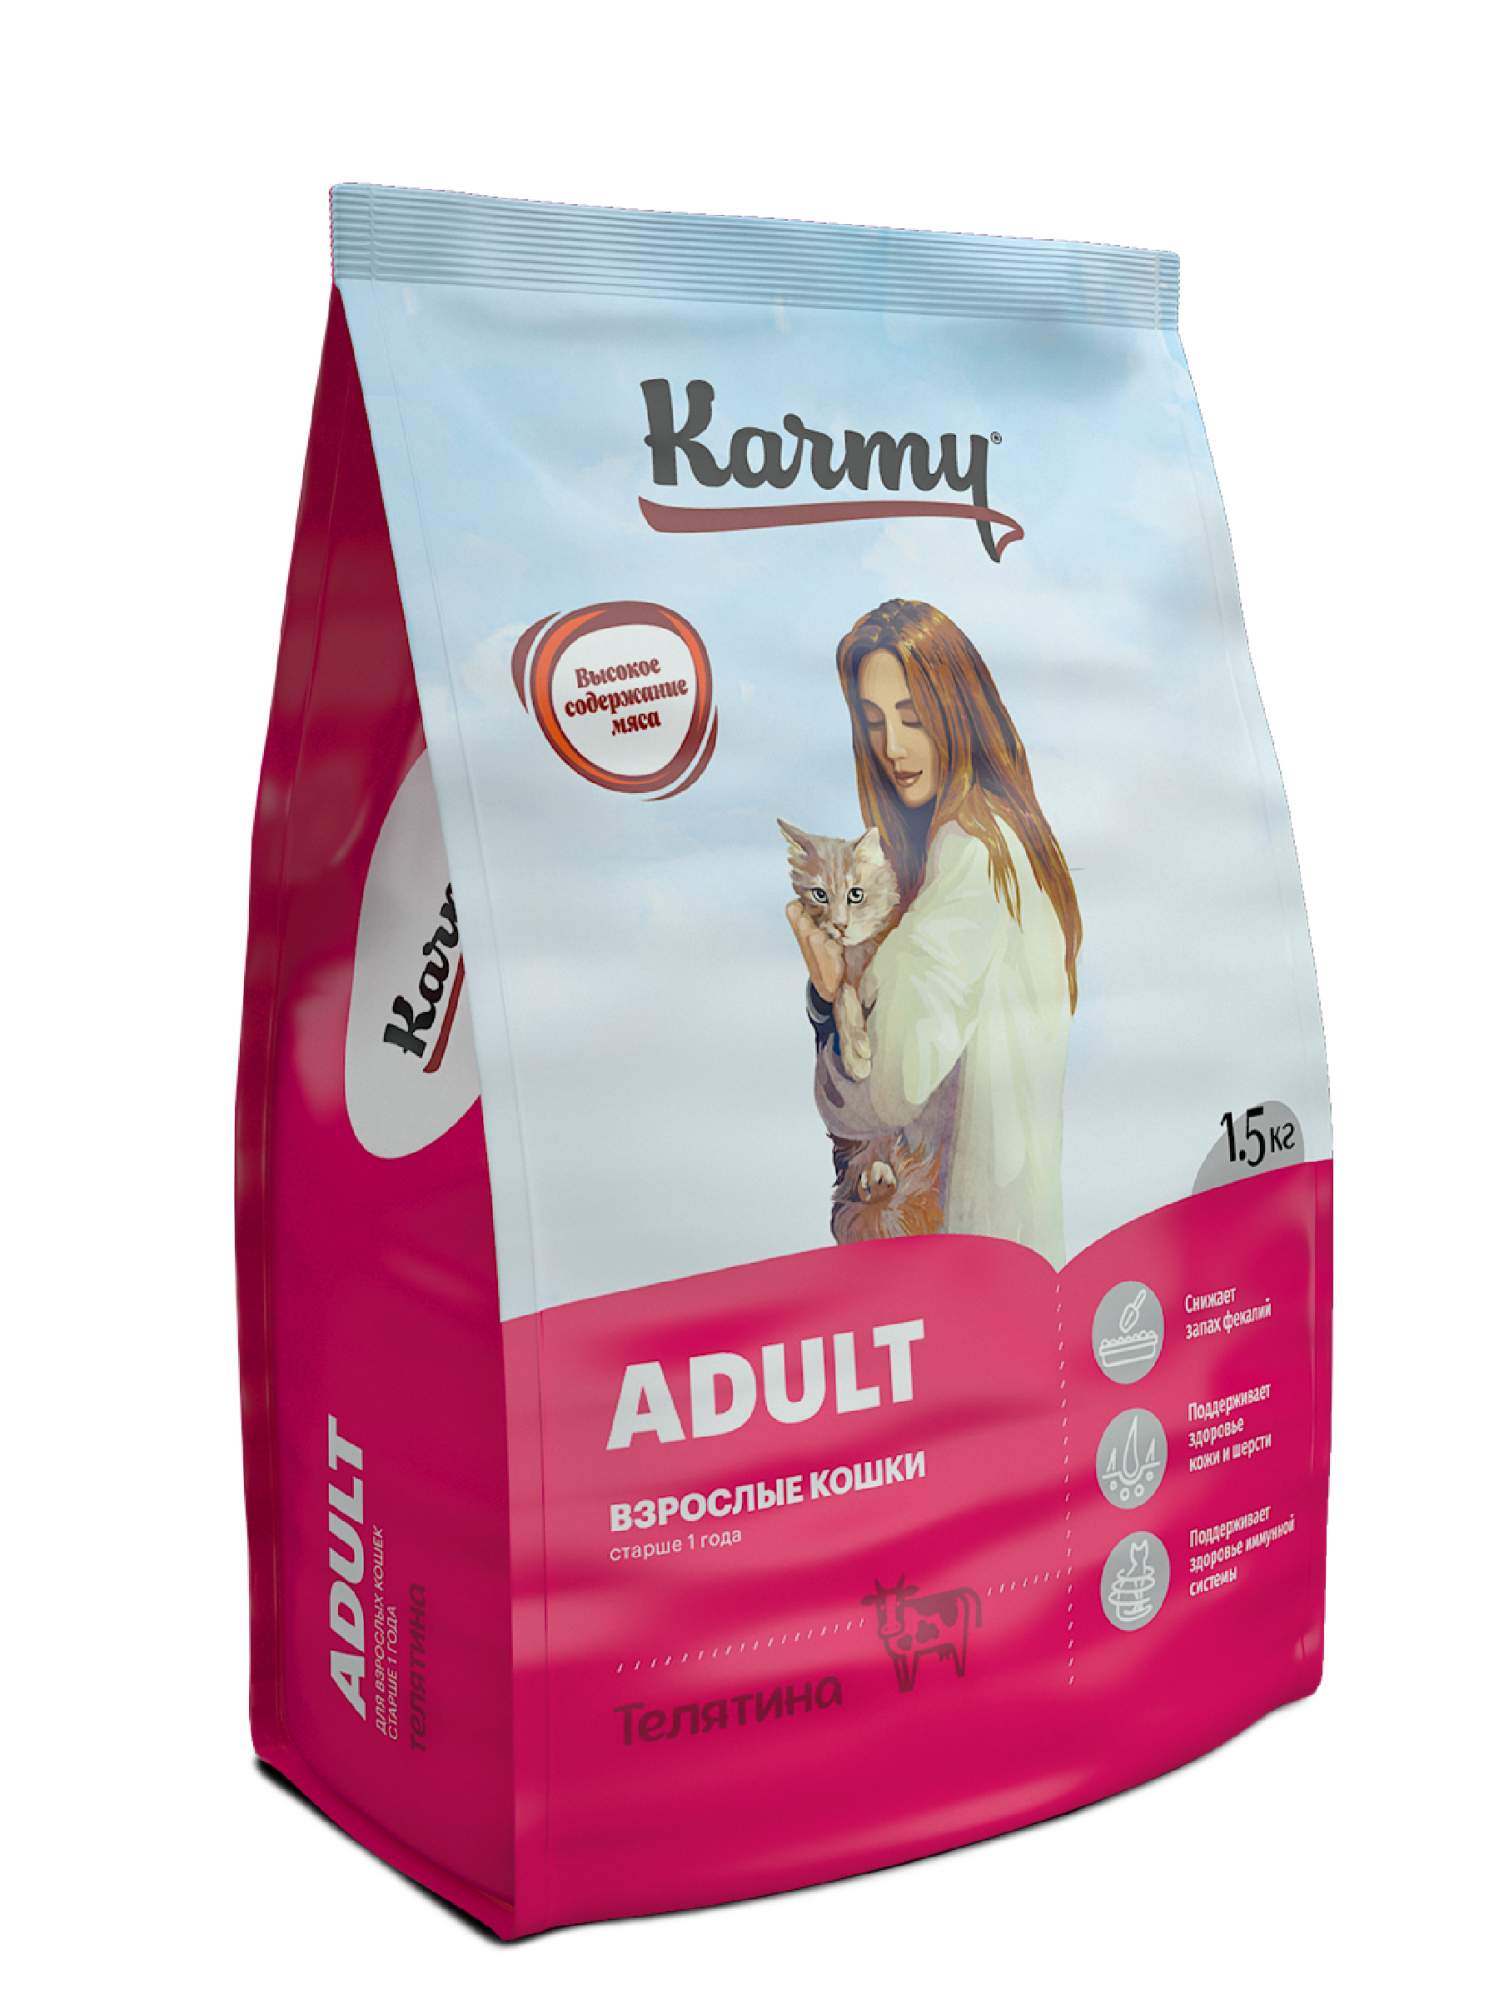 Купить сухой корм для кошек Karmy Adult, телятина, 1,5кг, цены на Мегамаркет | Артикул: 600000137614